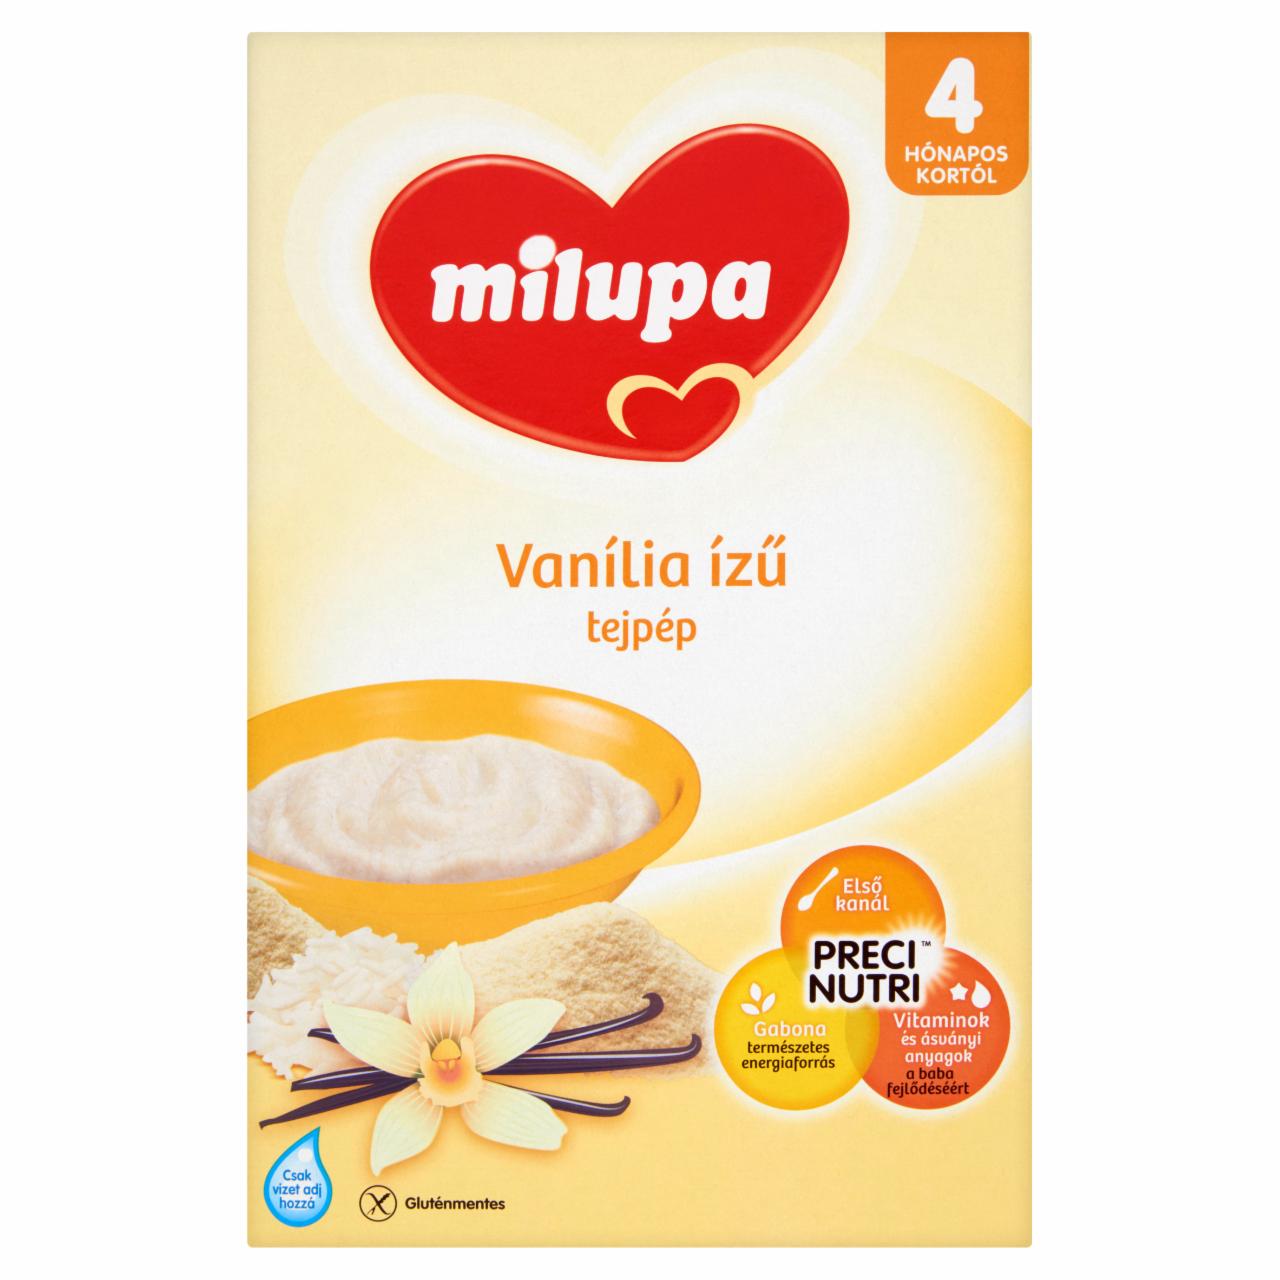 Képek - Milupa vanília ízű tejpép 4 hónapos kortól 250 g